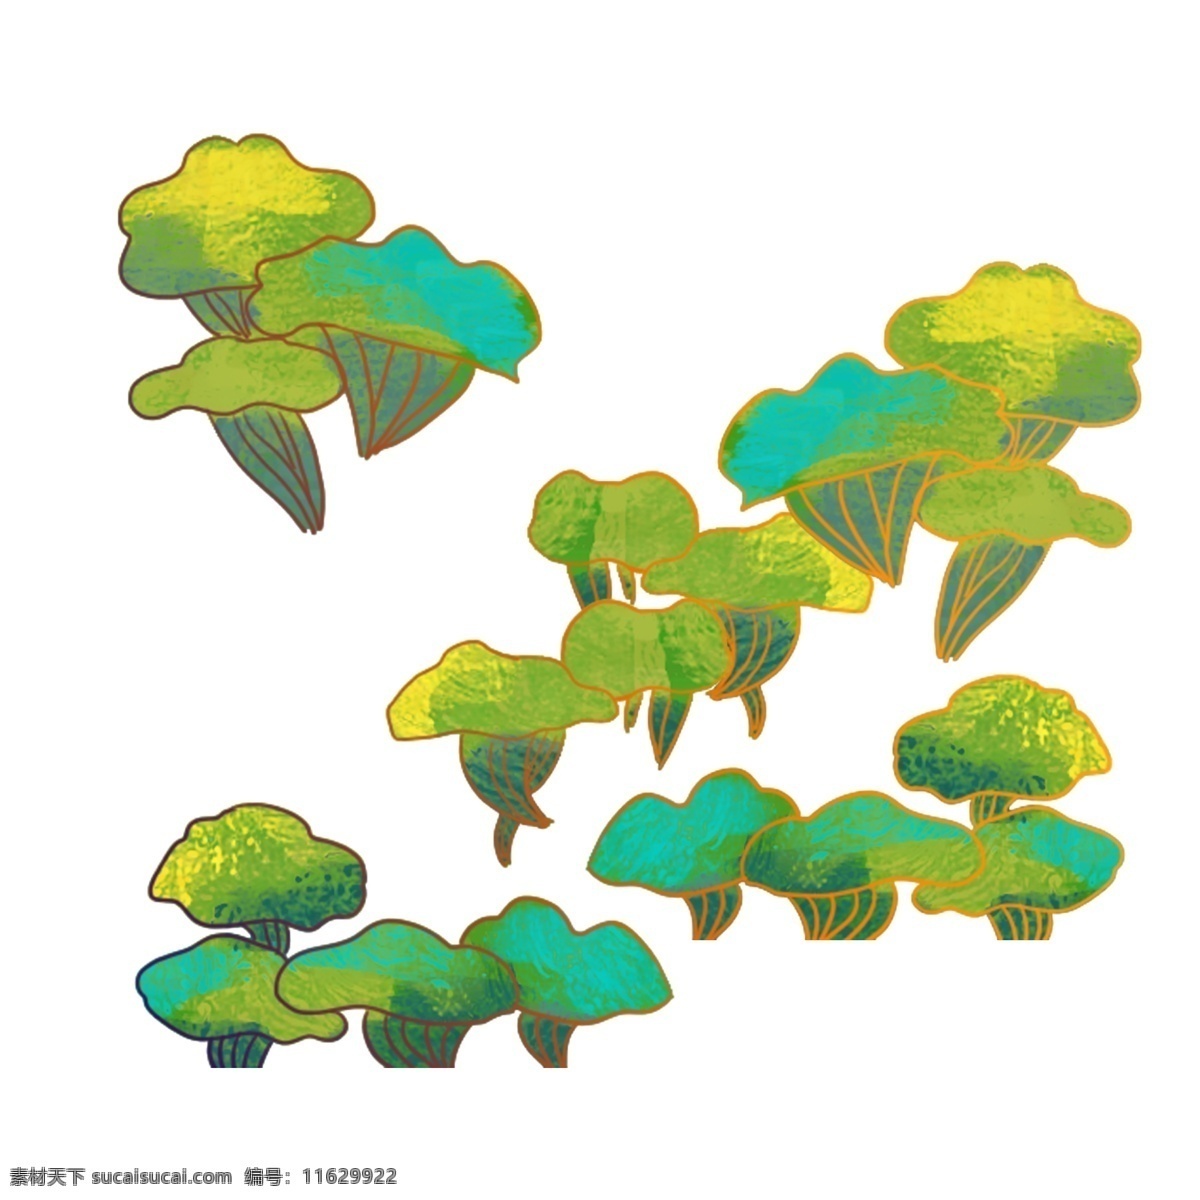 卡通 植物 元素 植物元素 植物素材 植物装饰 绿植 绿植元素 绿植素材 绿植装饰 绿色植物 绿色 绿色元素 绿色素材 绿色装饰 元素设计 动漫动画 风景漫画